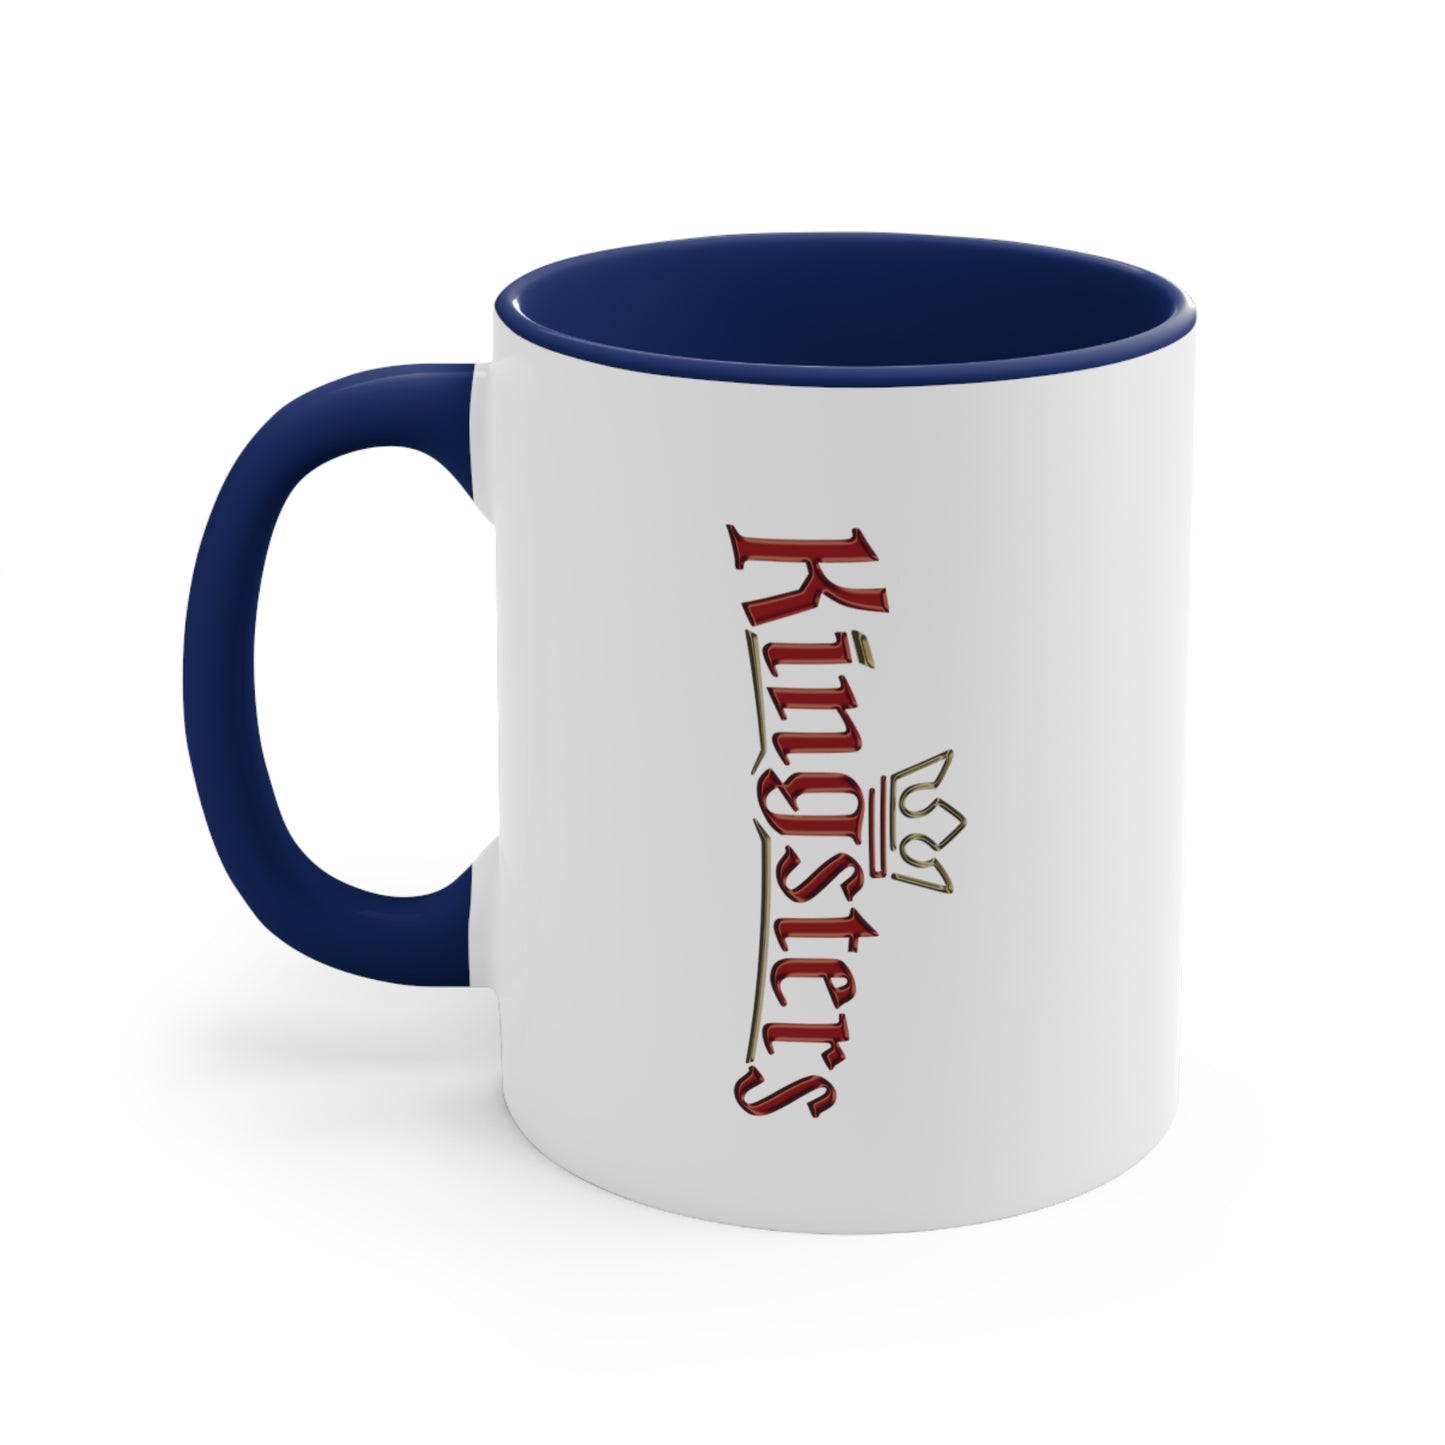 Kingsters Coffee Mug, 11oz